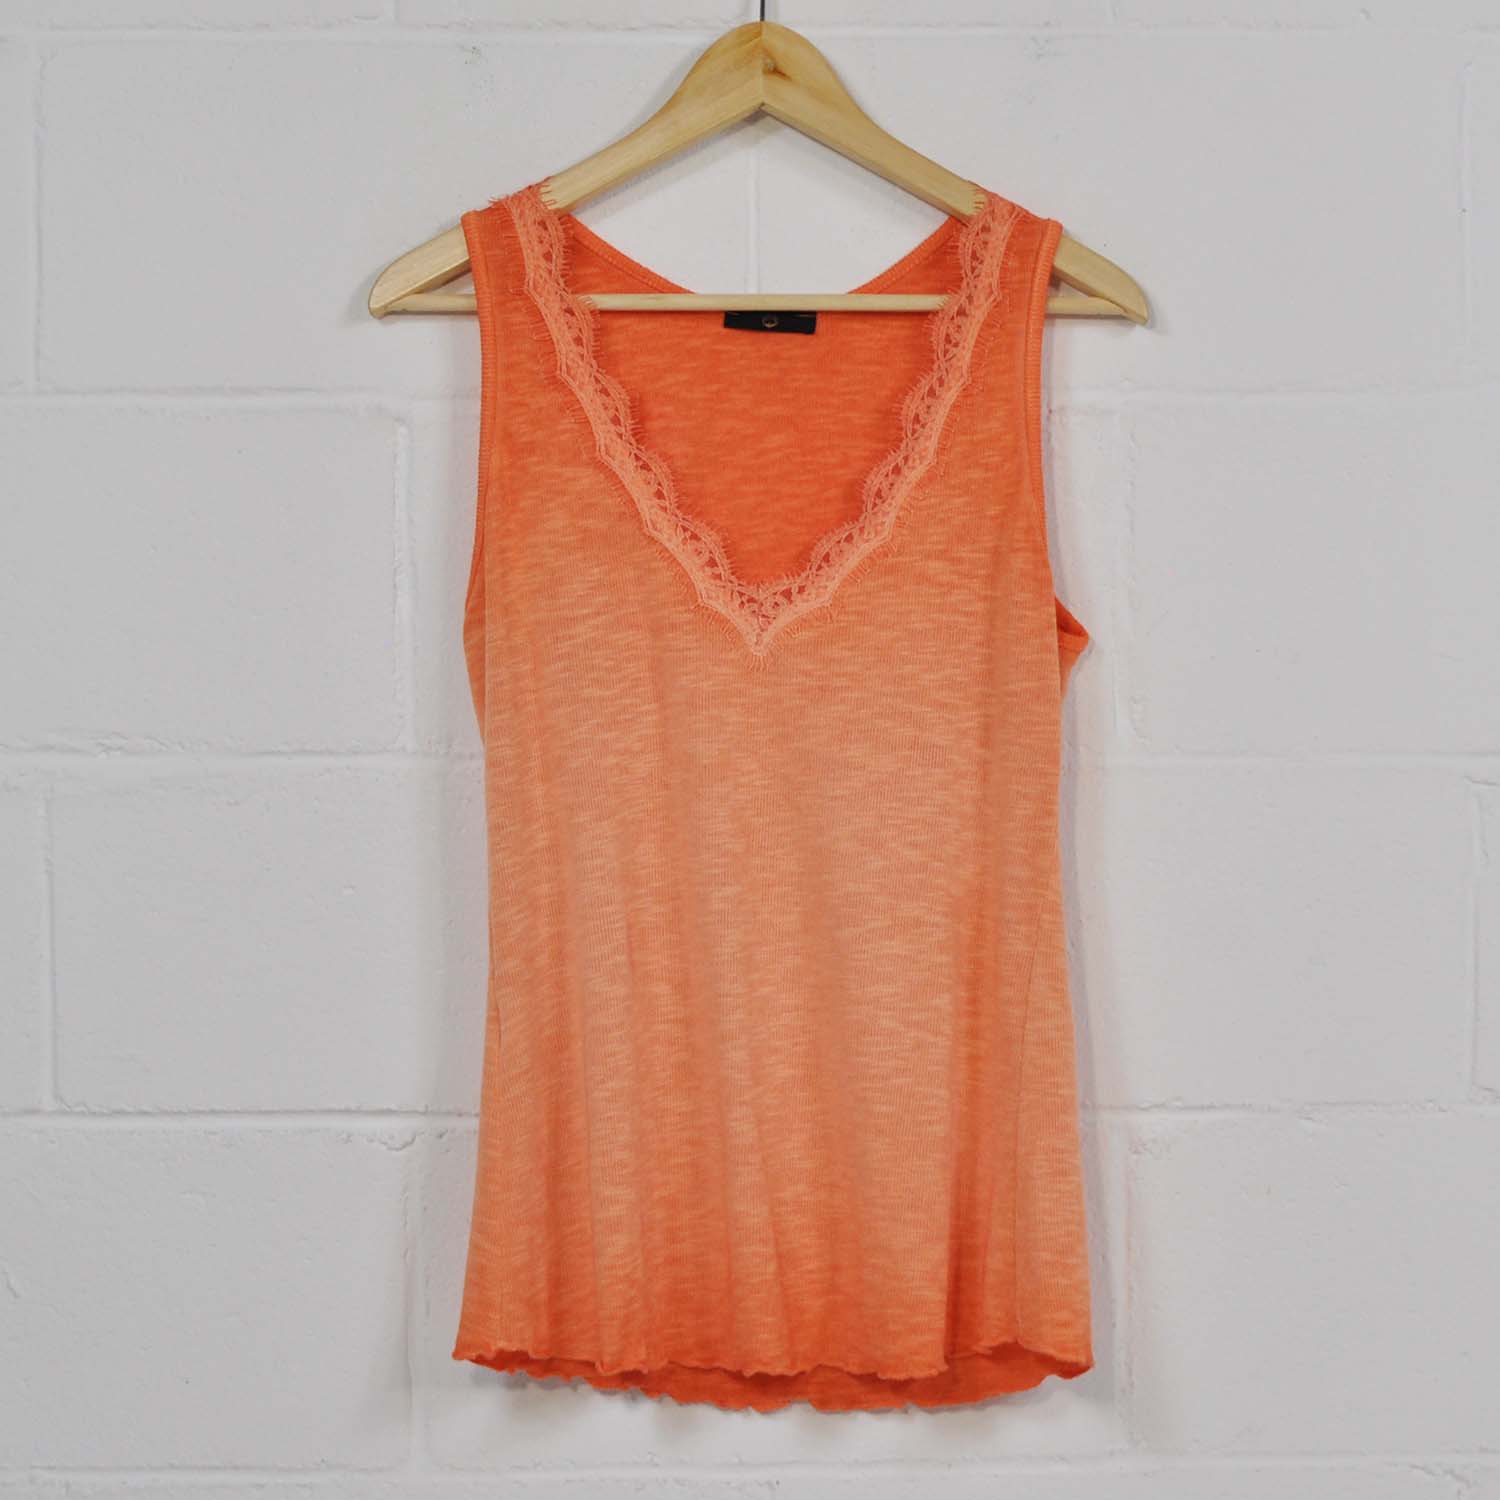 Orange lingerie t-shirt